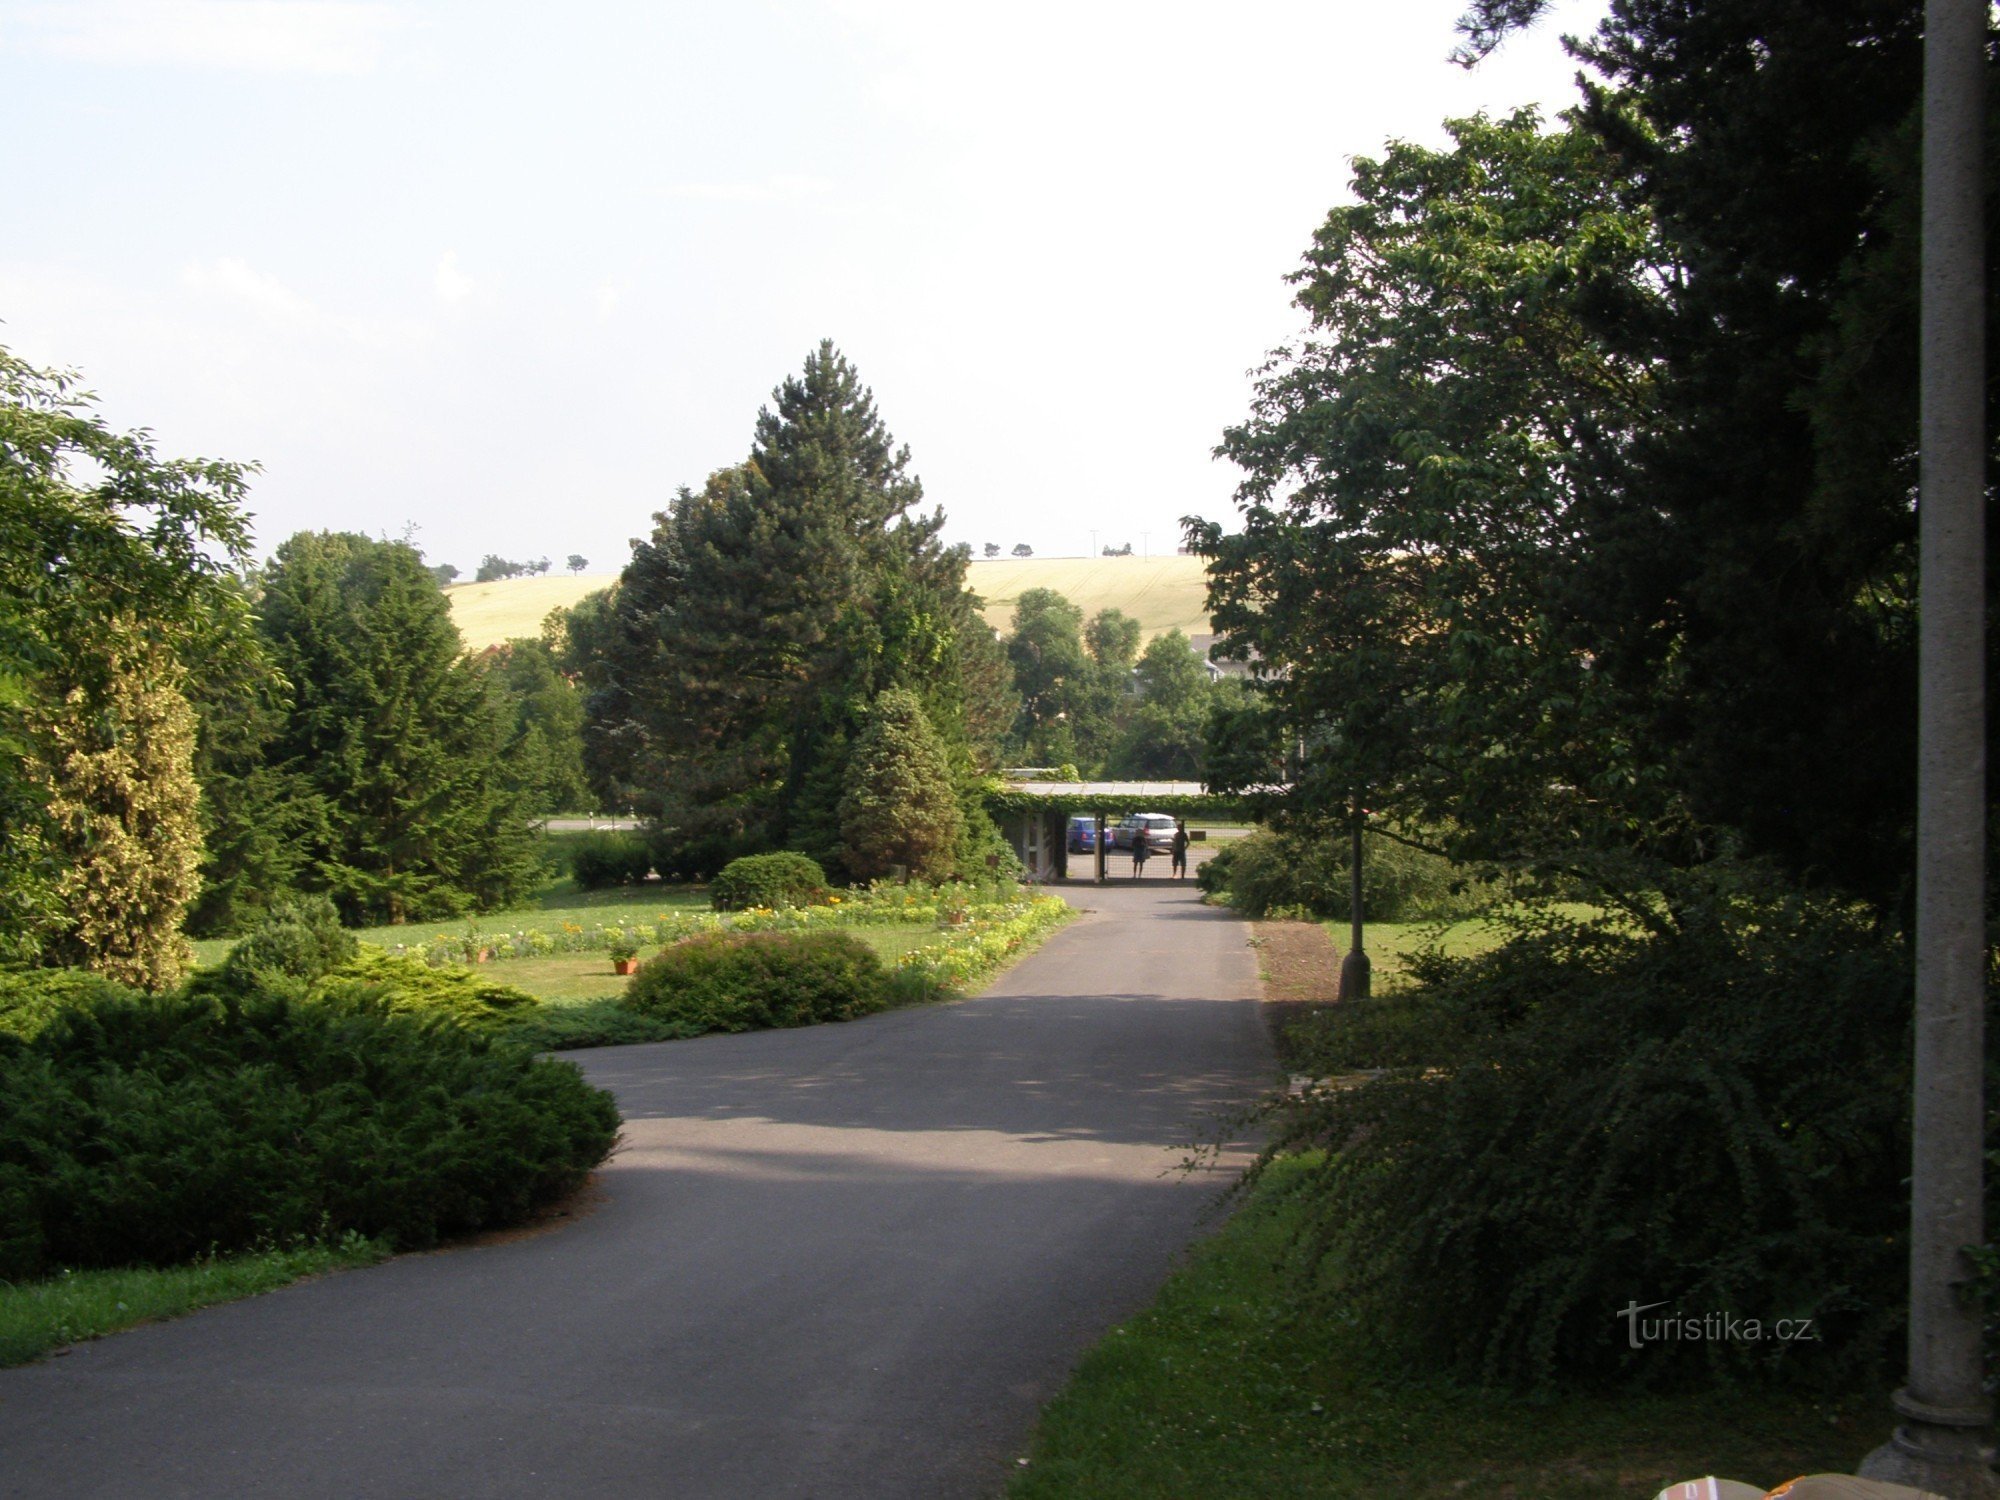 Arboretum Nový Dvůr près d'Opava